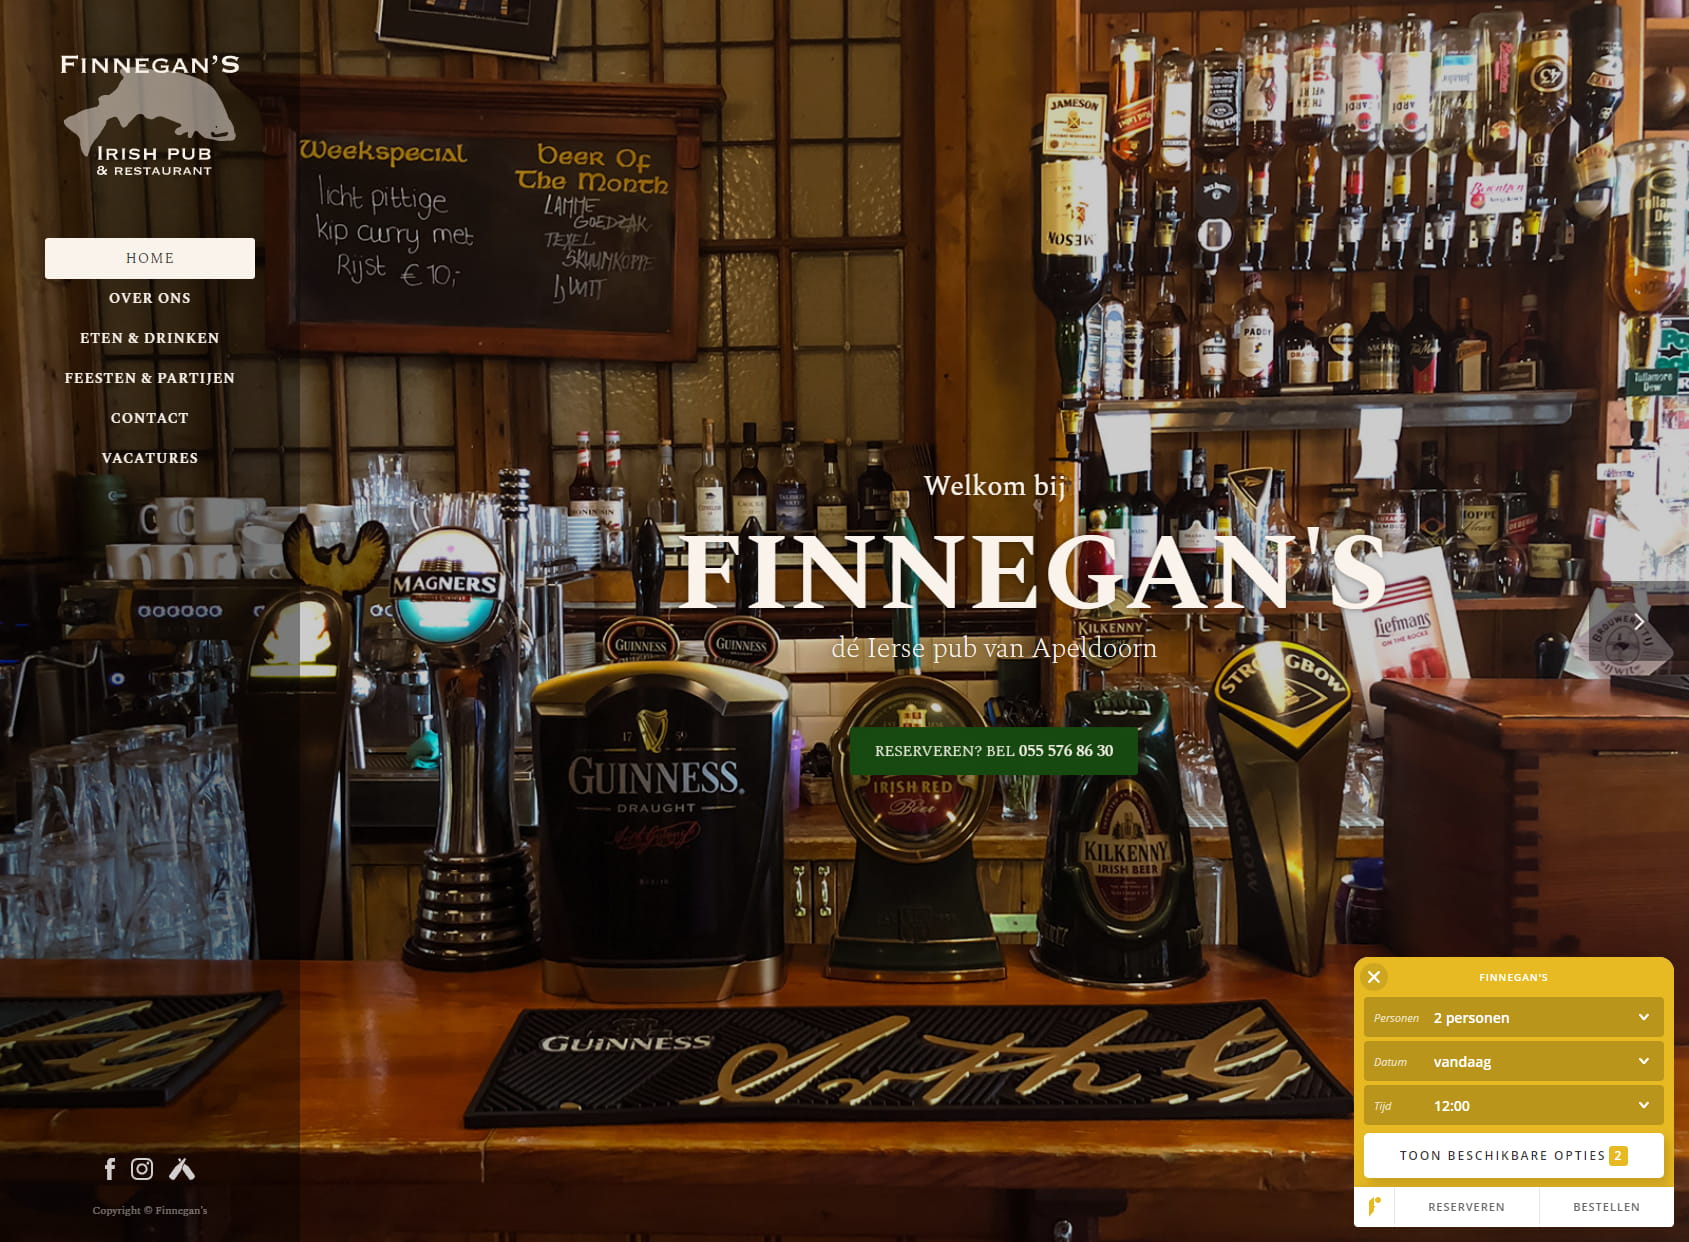 Finnegan's Irish pub